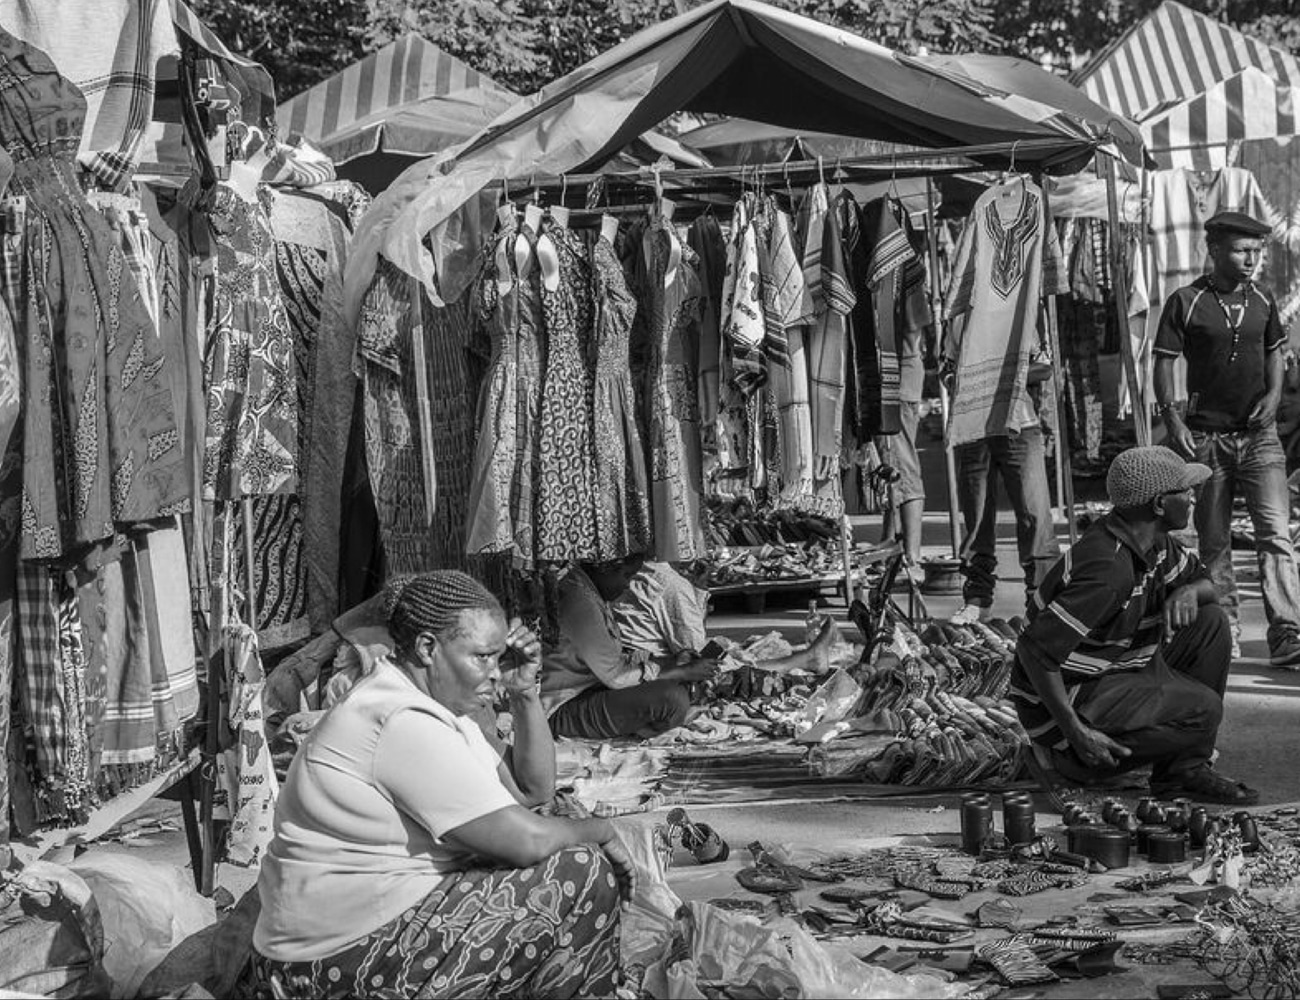 Clothing Shop at Maasai Market